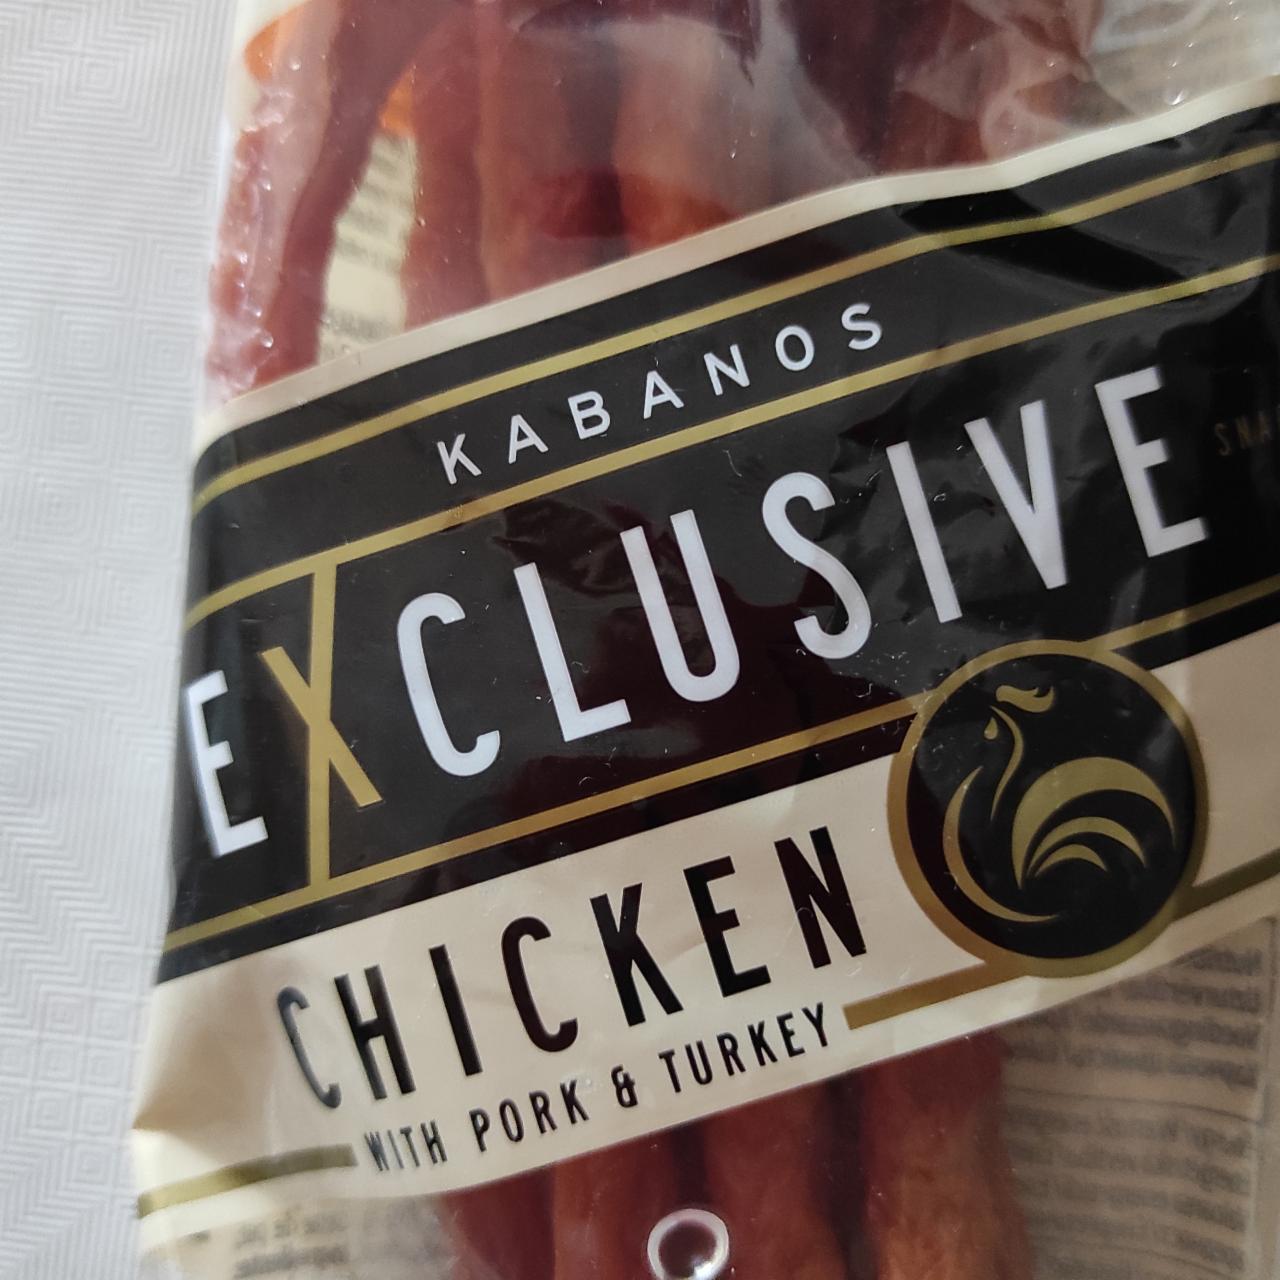 Фото - Кабаносы Chicken With Pork & Turkey Exclusive Kabanos